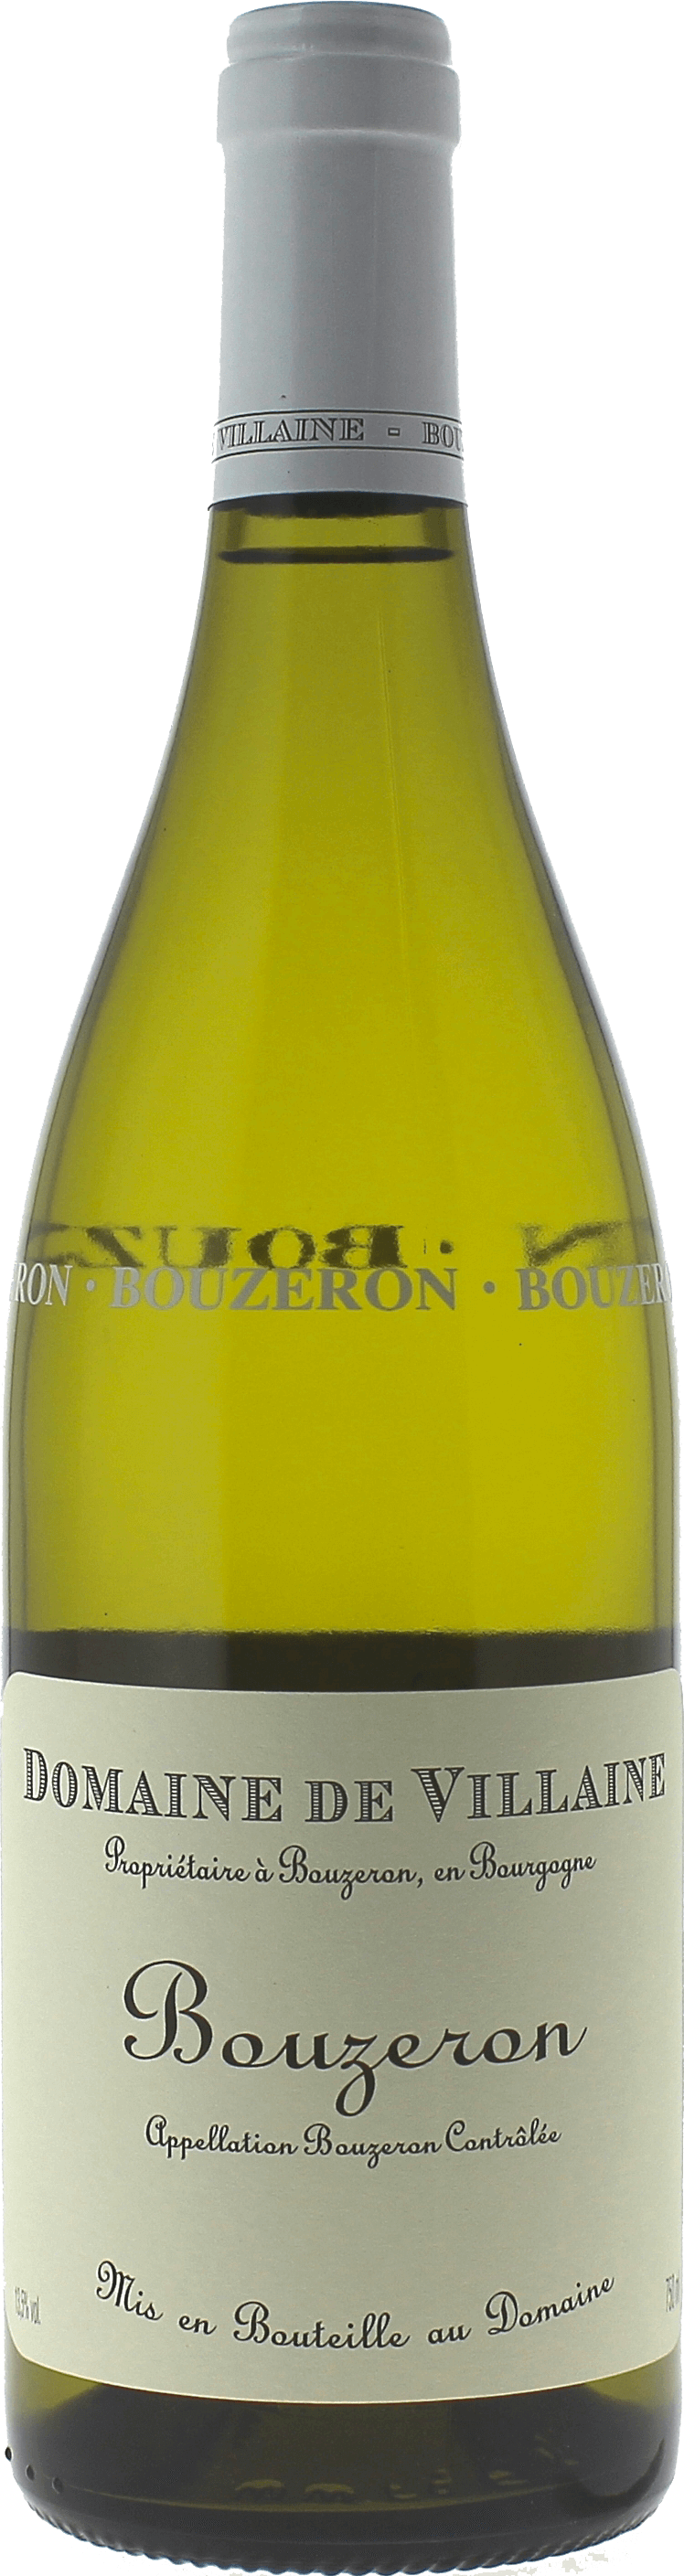 Bouzeron aligot 2020 Domaine DE VILLAINE, Bourgogne blanc